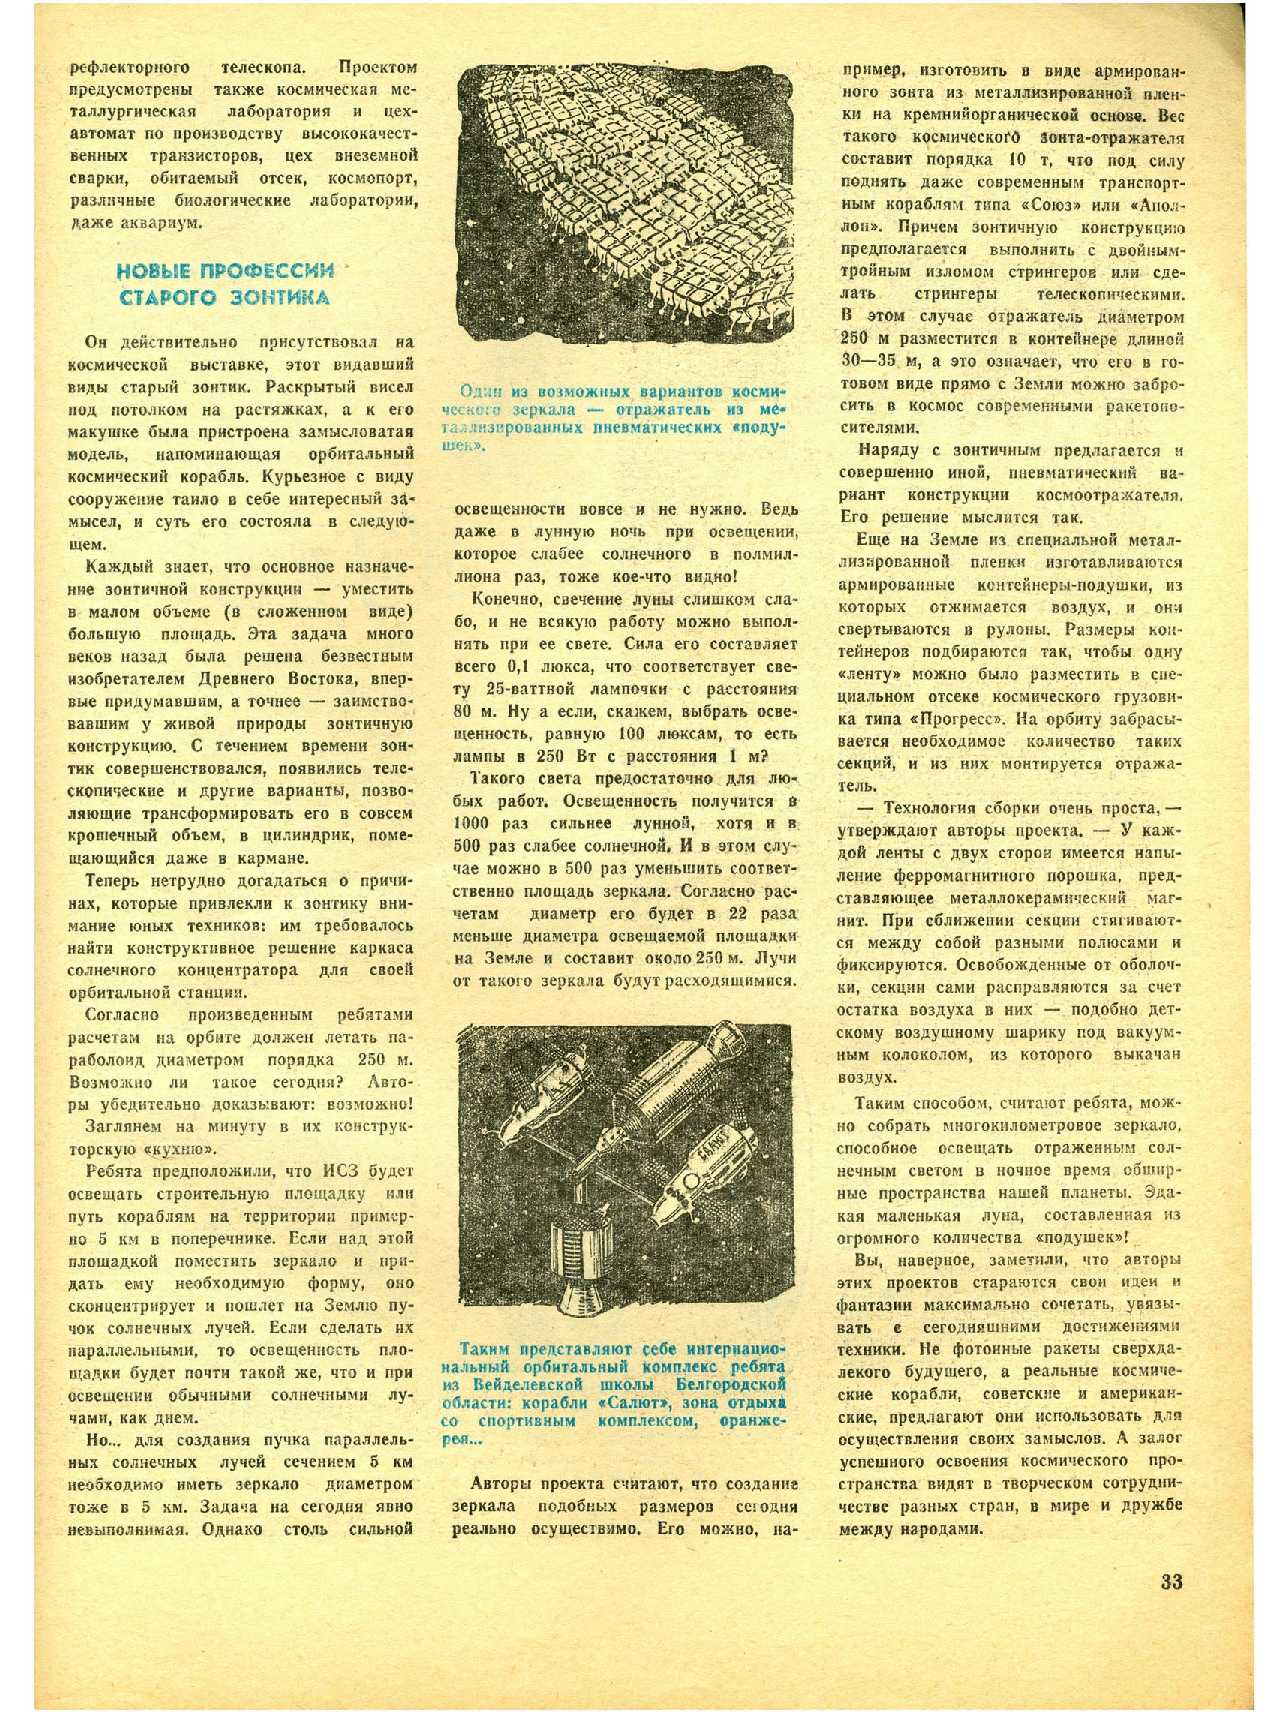 МК 9, 1978, 33 c.